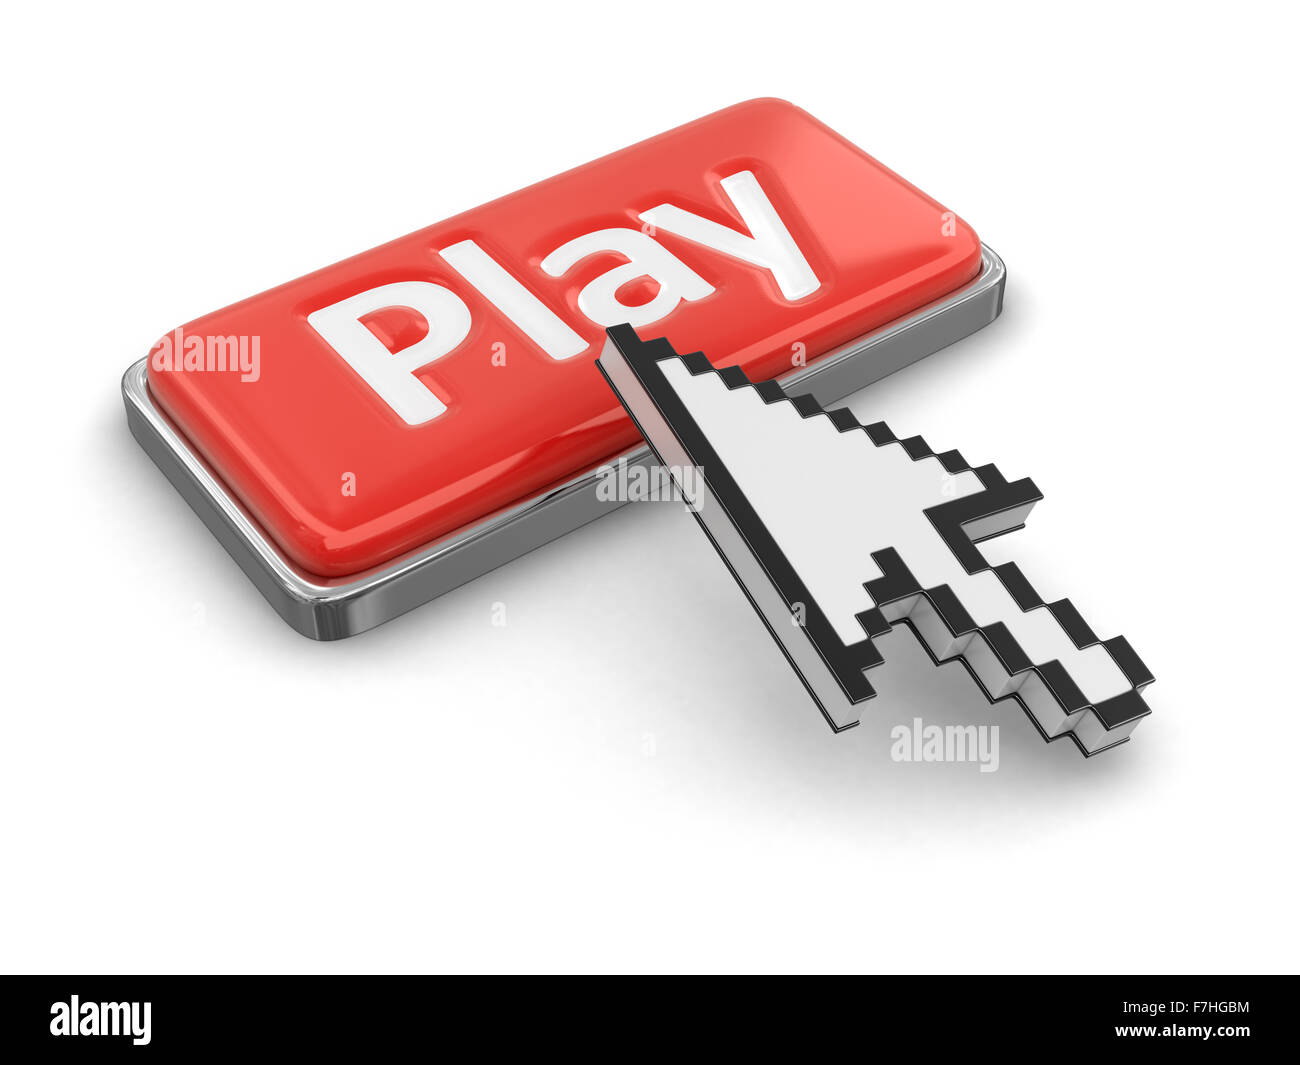 Bouton de curseur et jouer. Image avec clipping path Banque D'Images